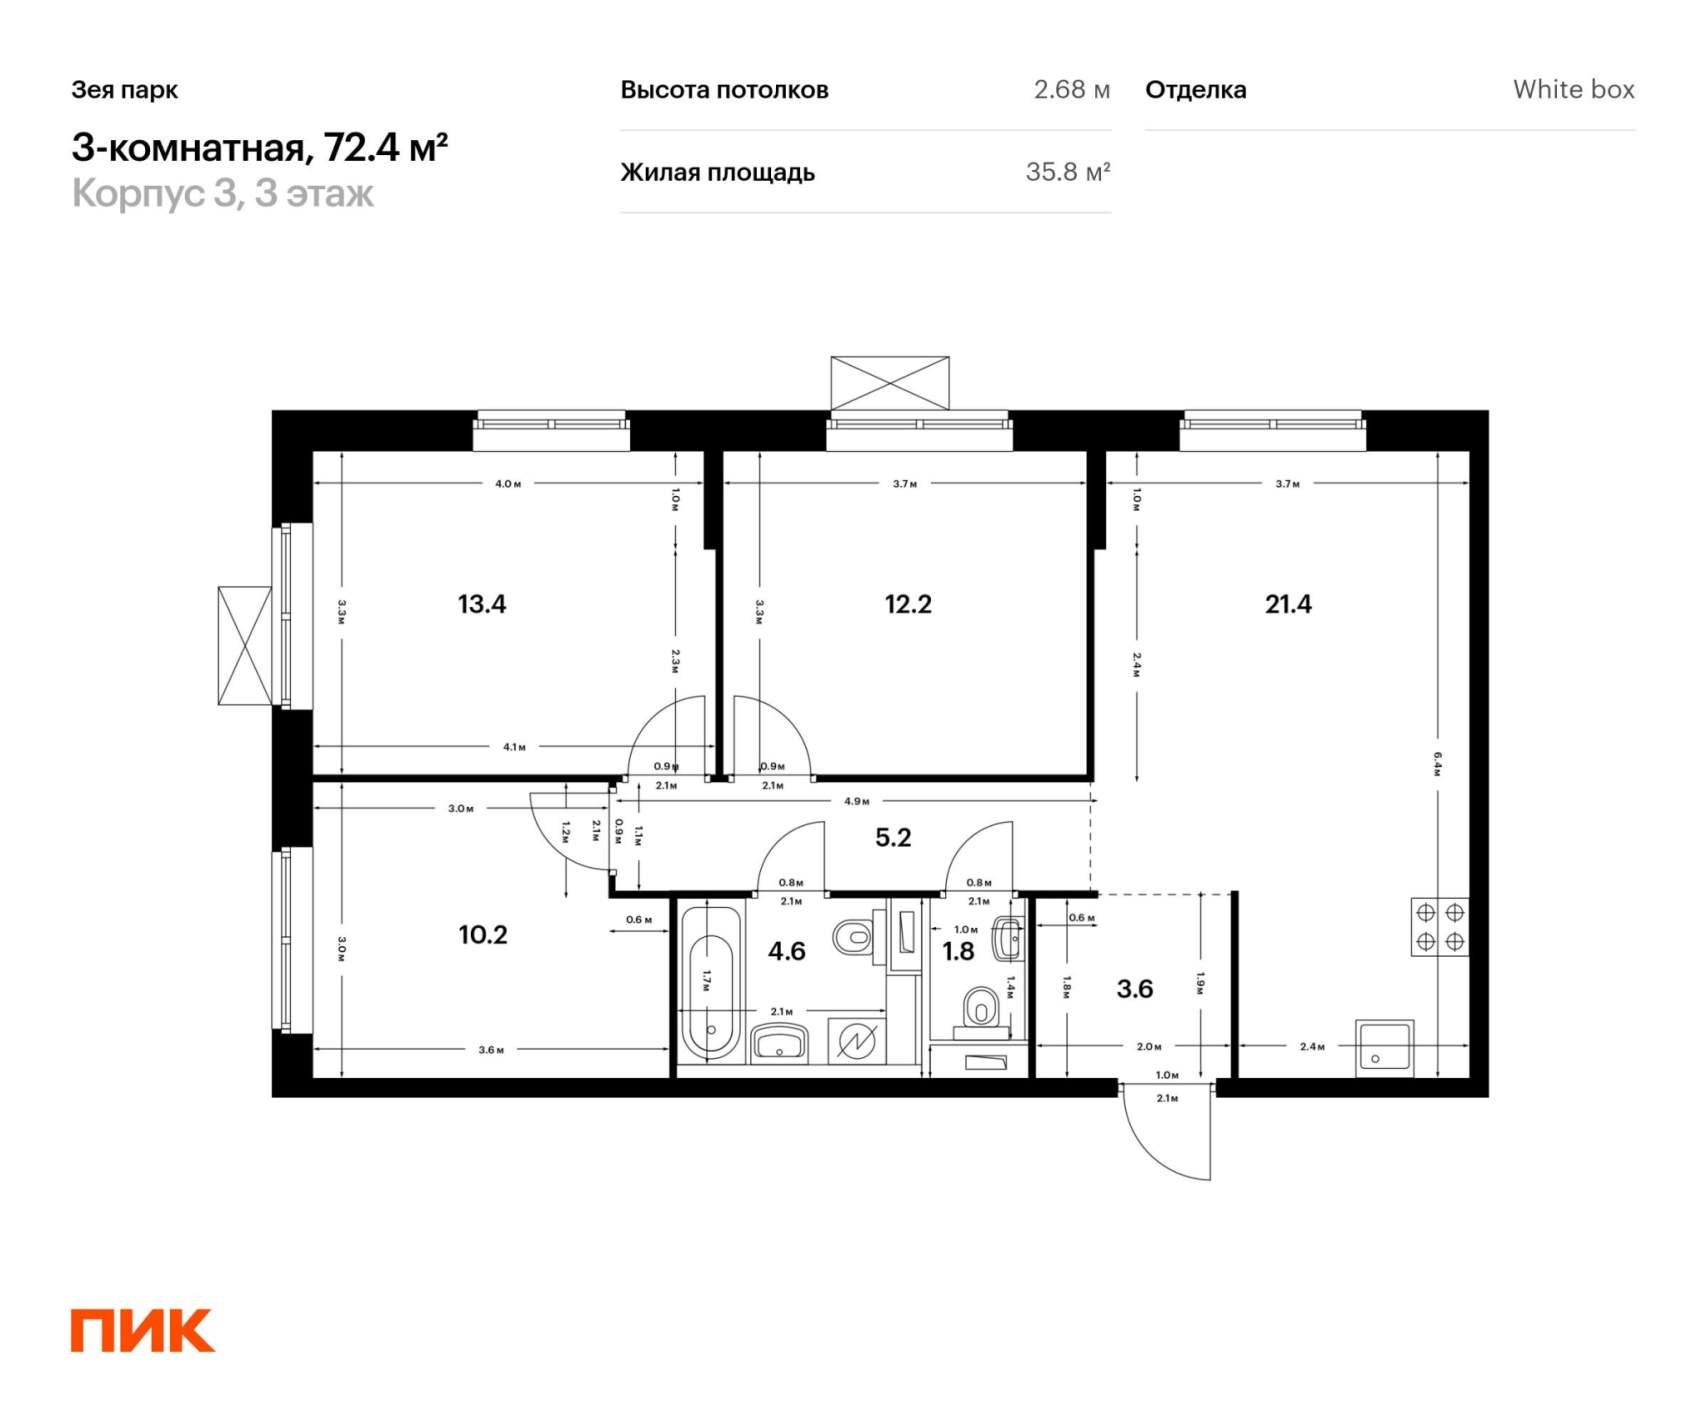 Продам трехкомнатную квартиру в новостройке 72.4 м.кв.